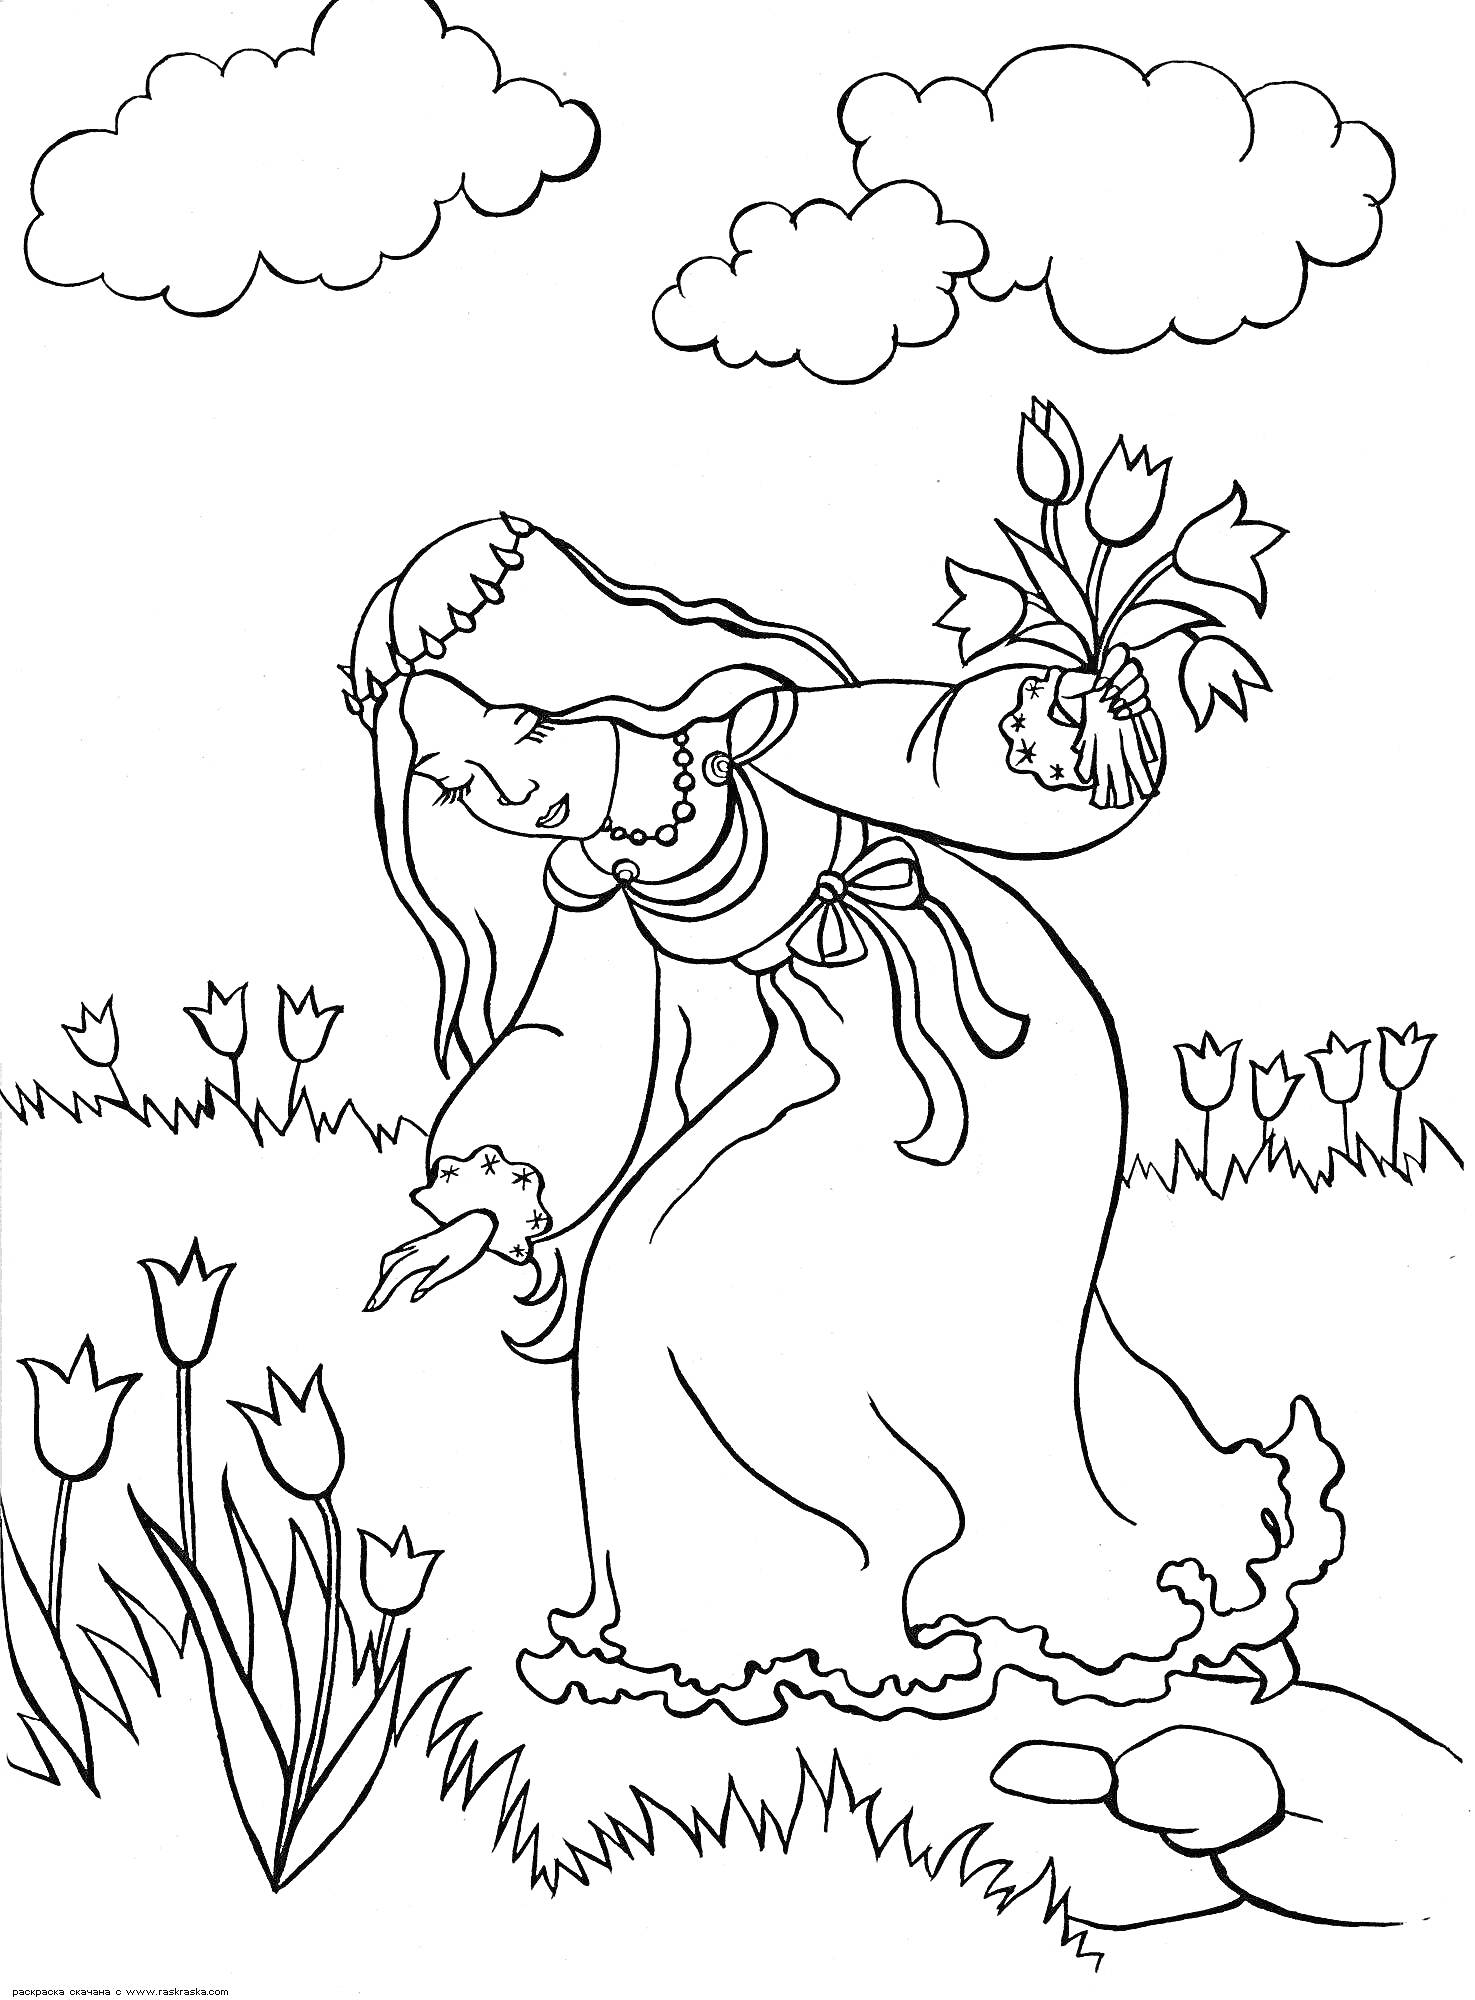 Раскраска Девочка с букетом среди тюльпанов на поле с облаками